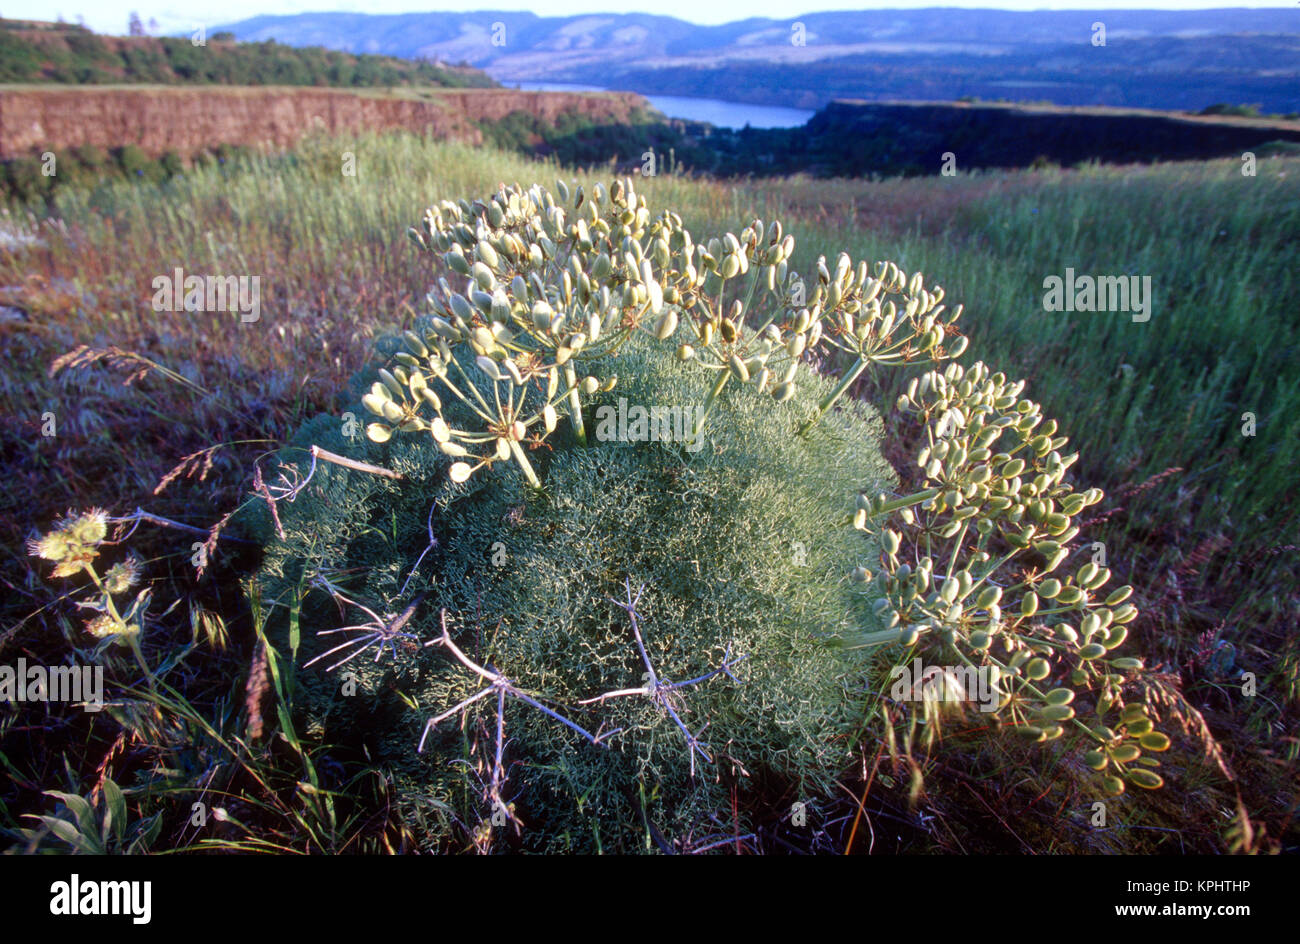 Unknown plant, McCall Nature Preserve, Oregon Stock Photo